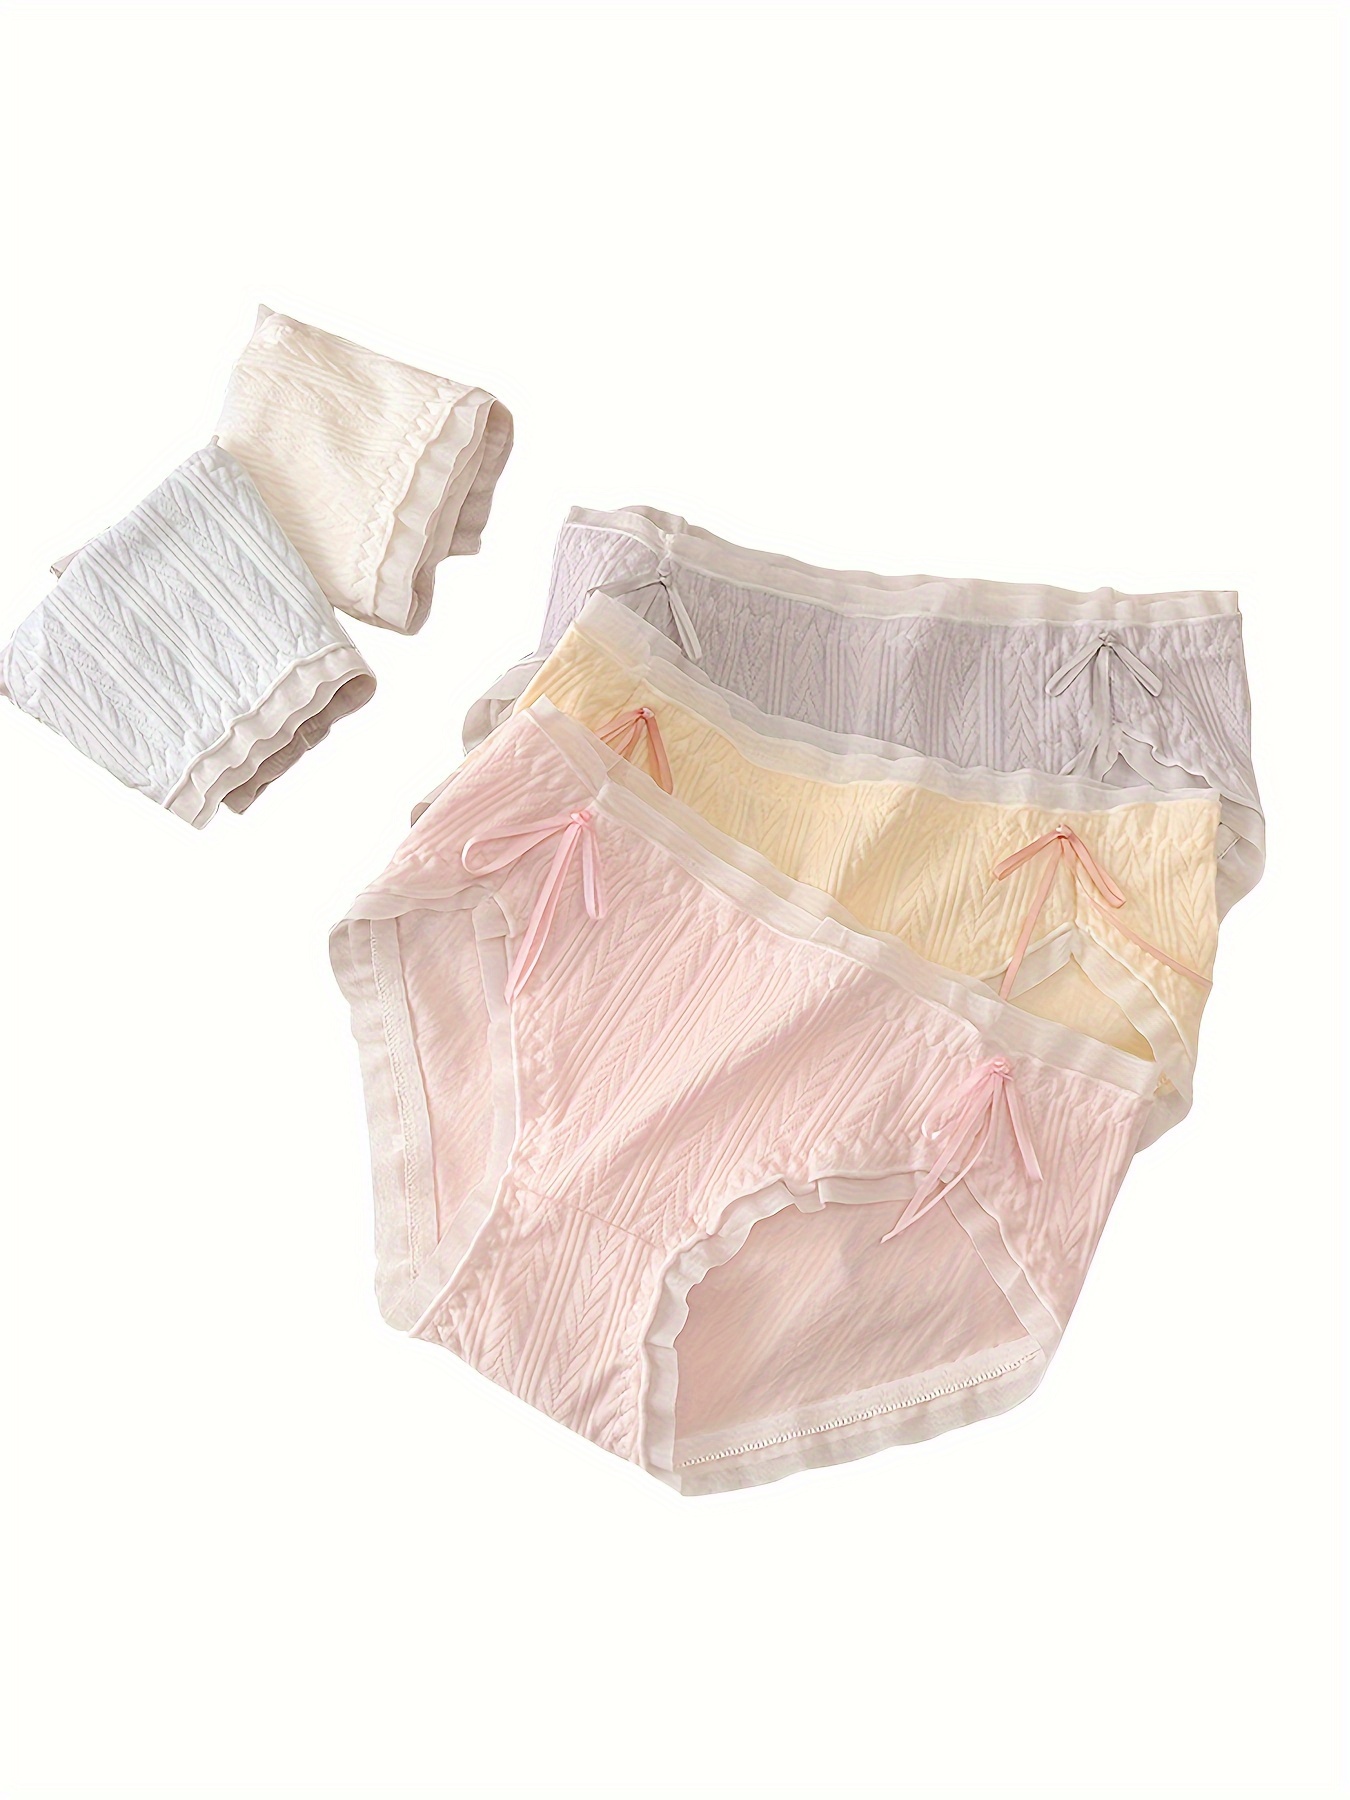 5pcs Heart Print Briefs, Comfy & Cute Bow Tie Intimates Panties, Women's  Lingerie & Underwear